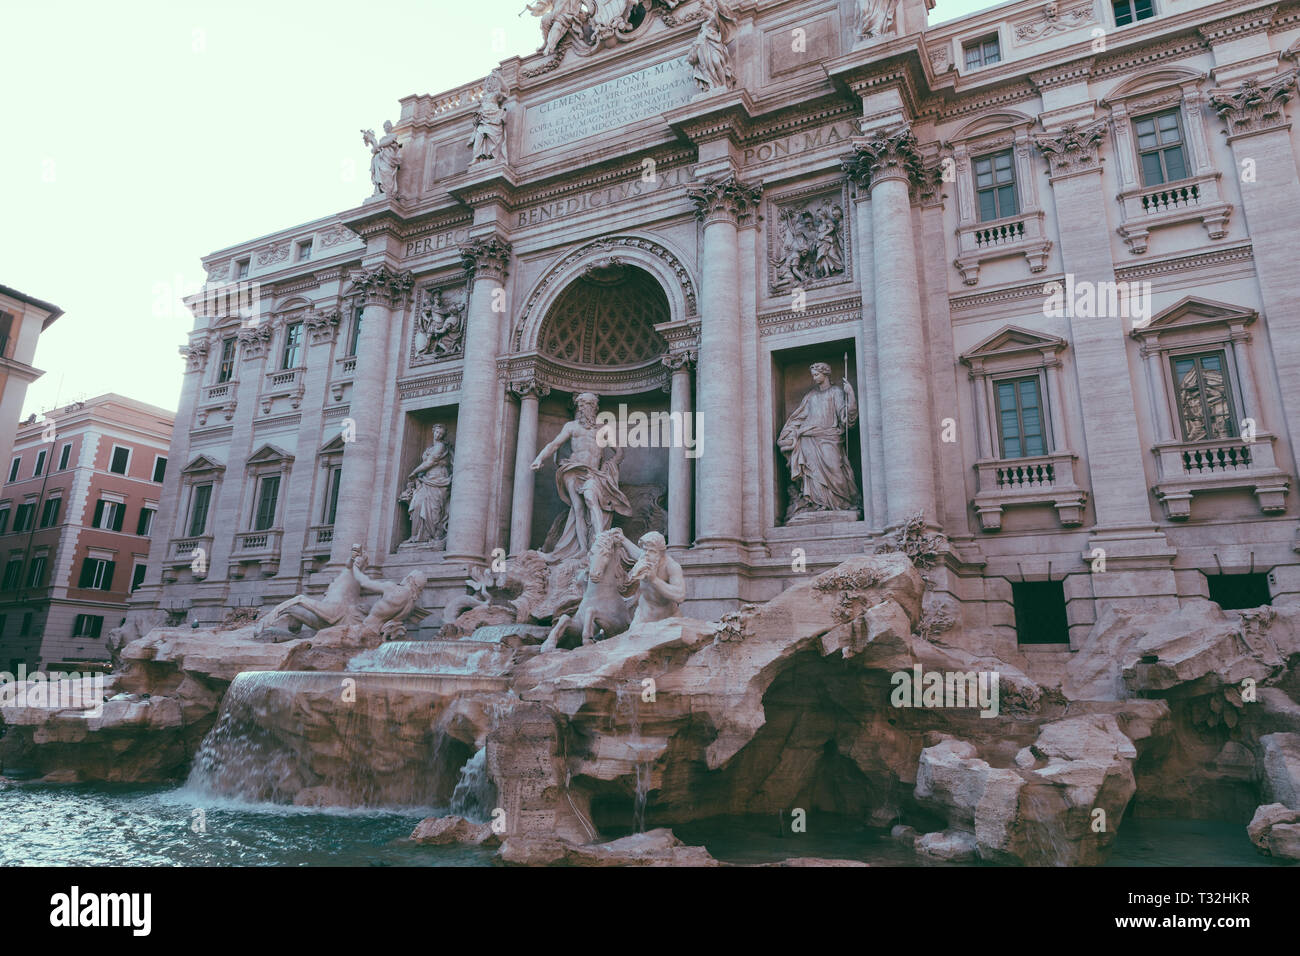 Vue panoramique sur la Fontaine de Trevi dans le quartier de Trevi à Rome, Italie. Il conçu par l'architecte italien Nicola Salvi et achevé par Giuseppe Pannini Banque D'Images